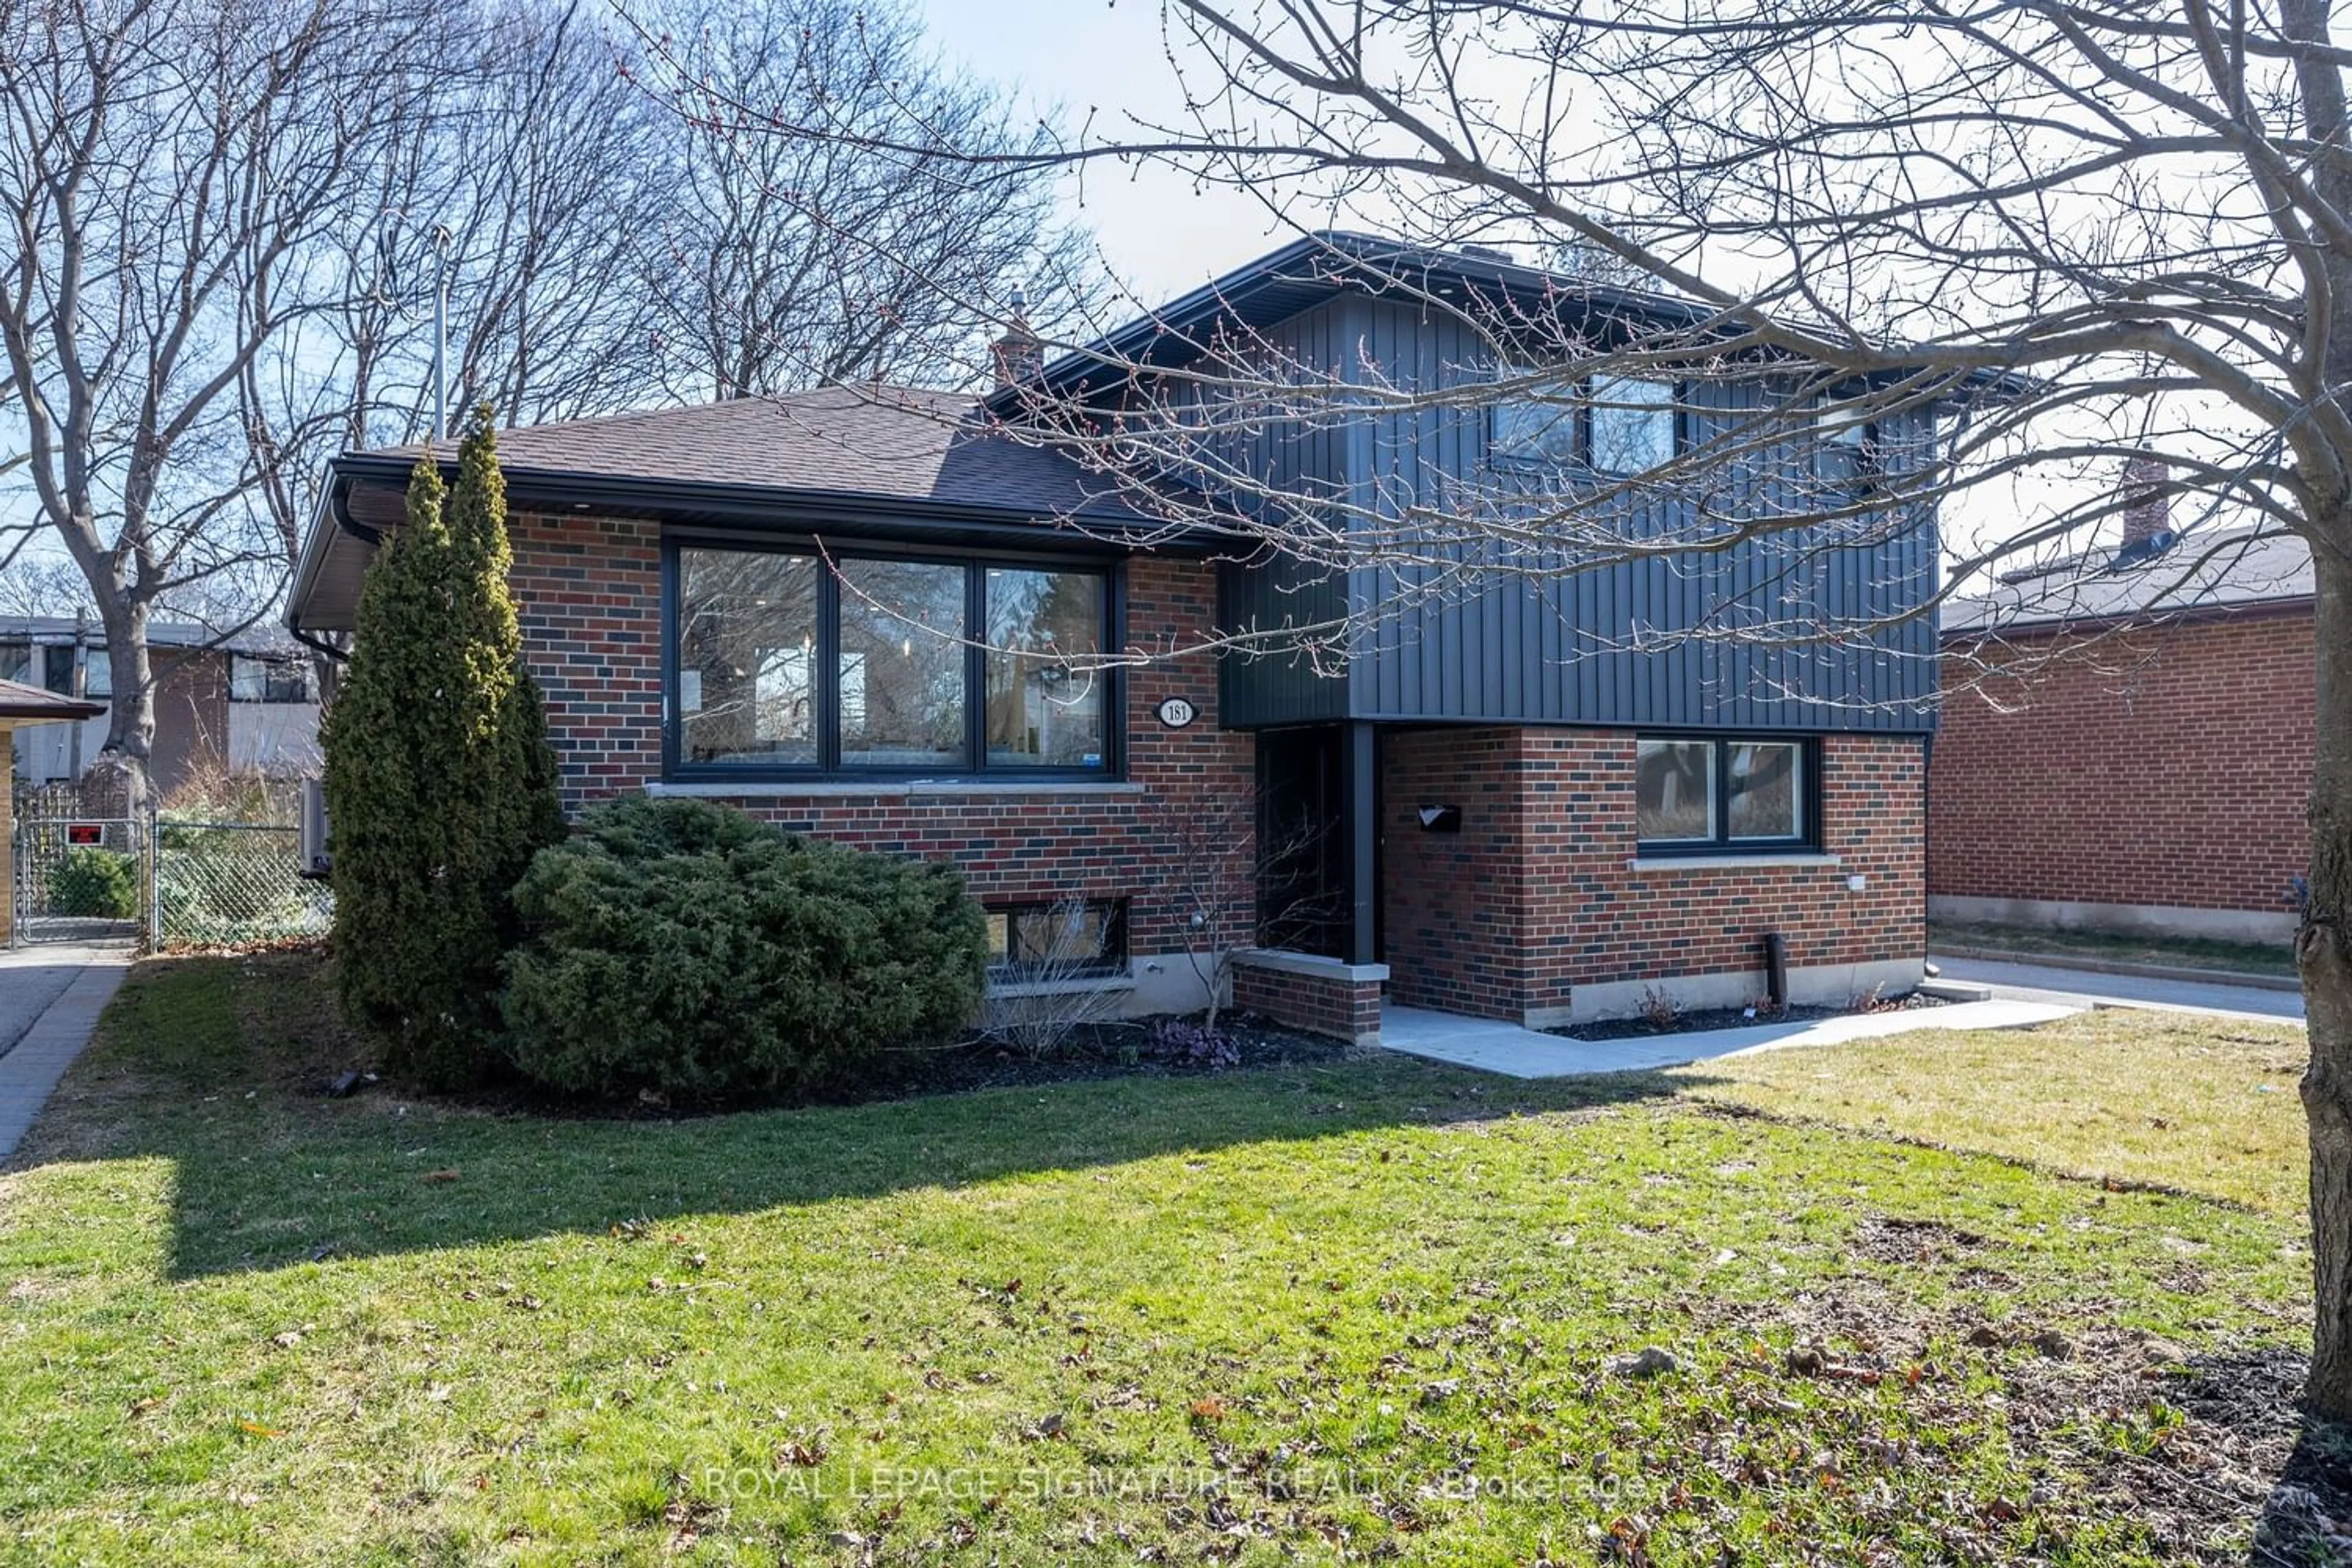 Home with brick exterior material for 181 Broadlands Blvd, Toronto Ontario M3A 1K4